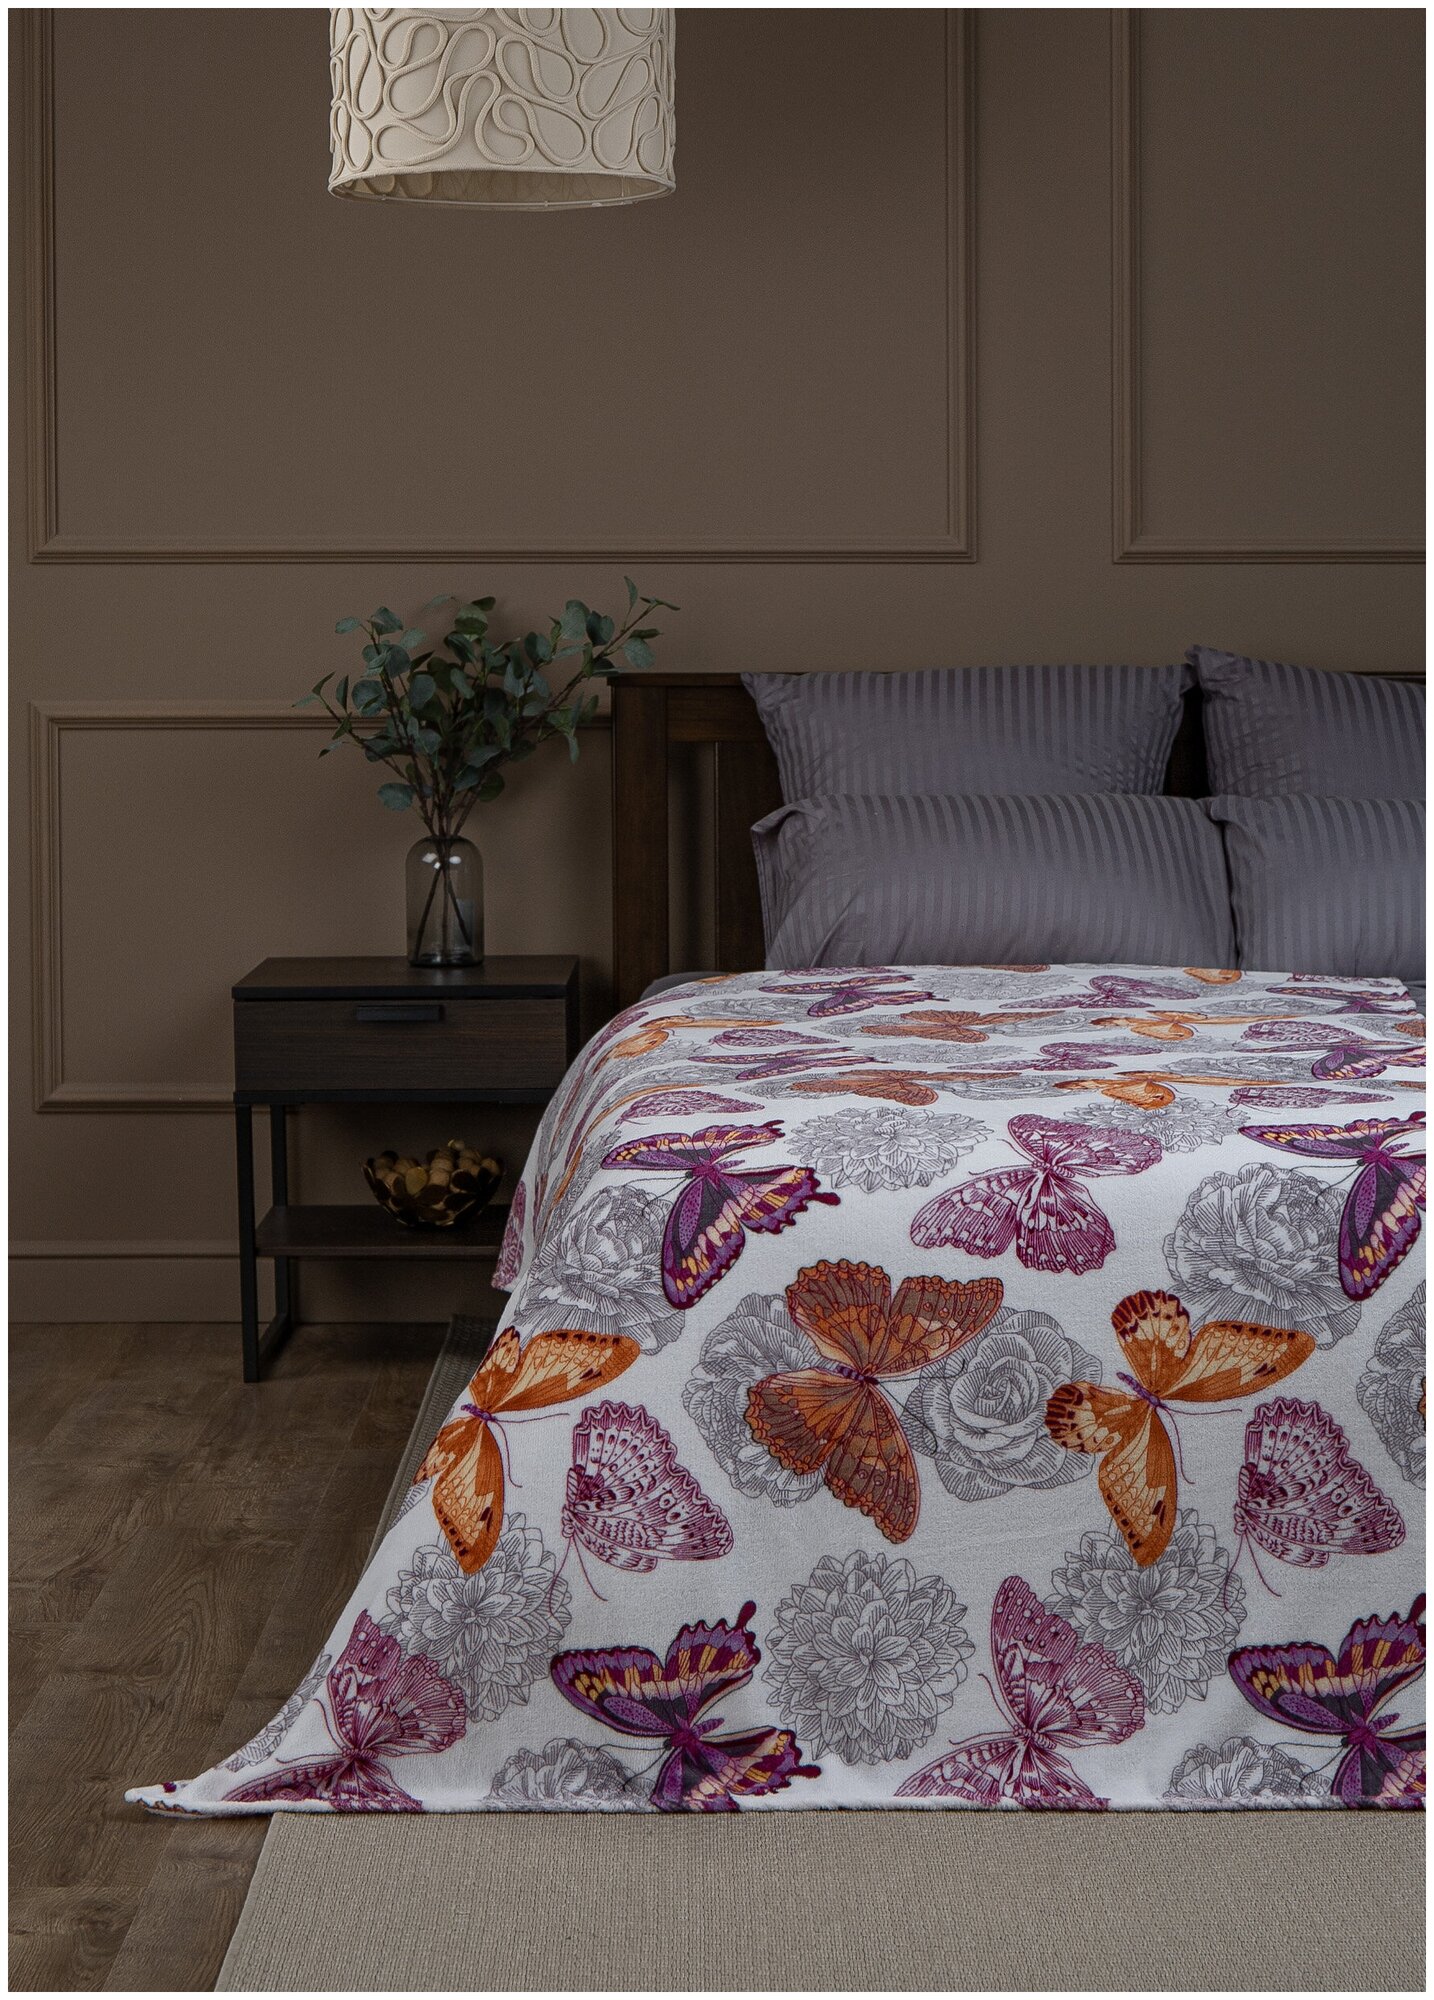 Плед TexRepublic Absolute Бабочки 150х200 1,5 спальный, покрывало на диван фланель мягкий бежевый, фиолетовый - фотография № 2